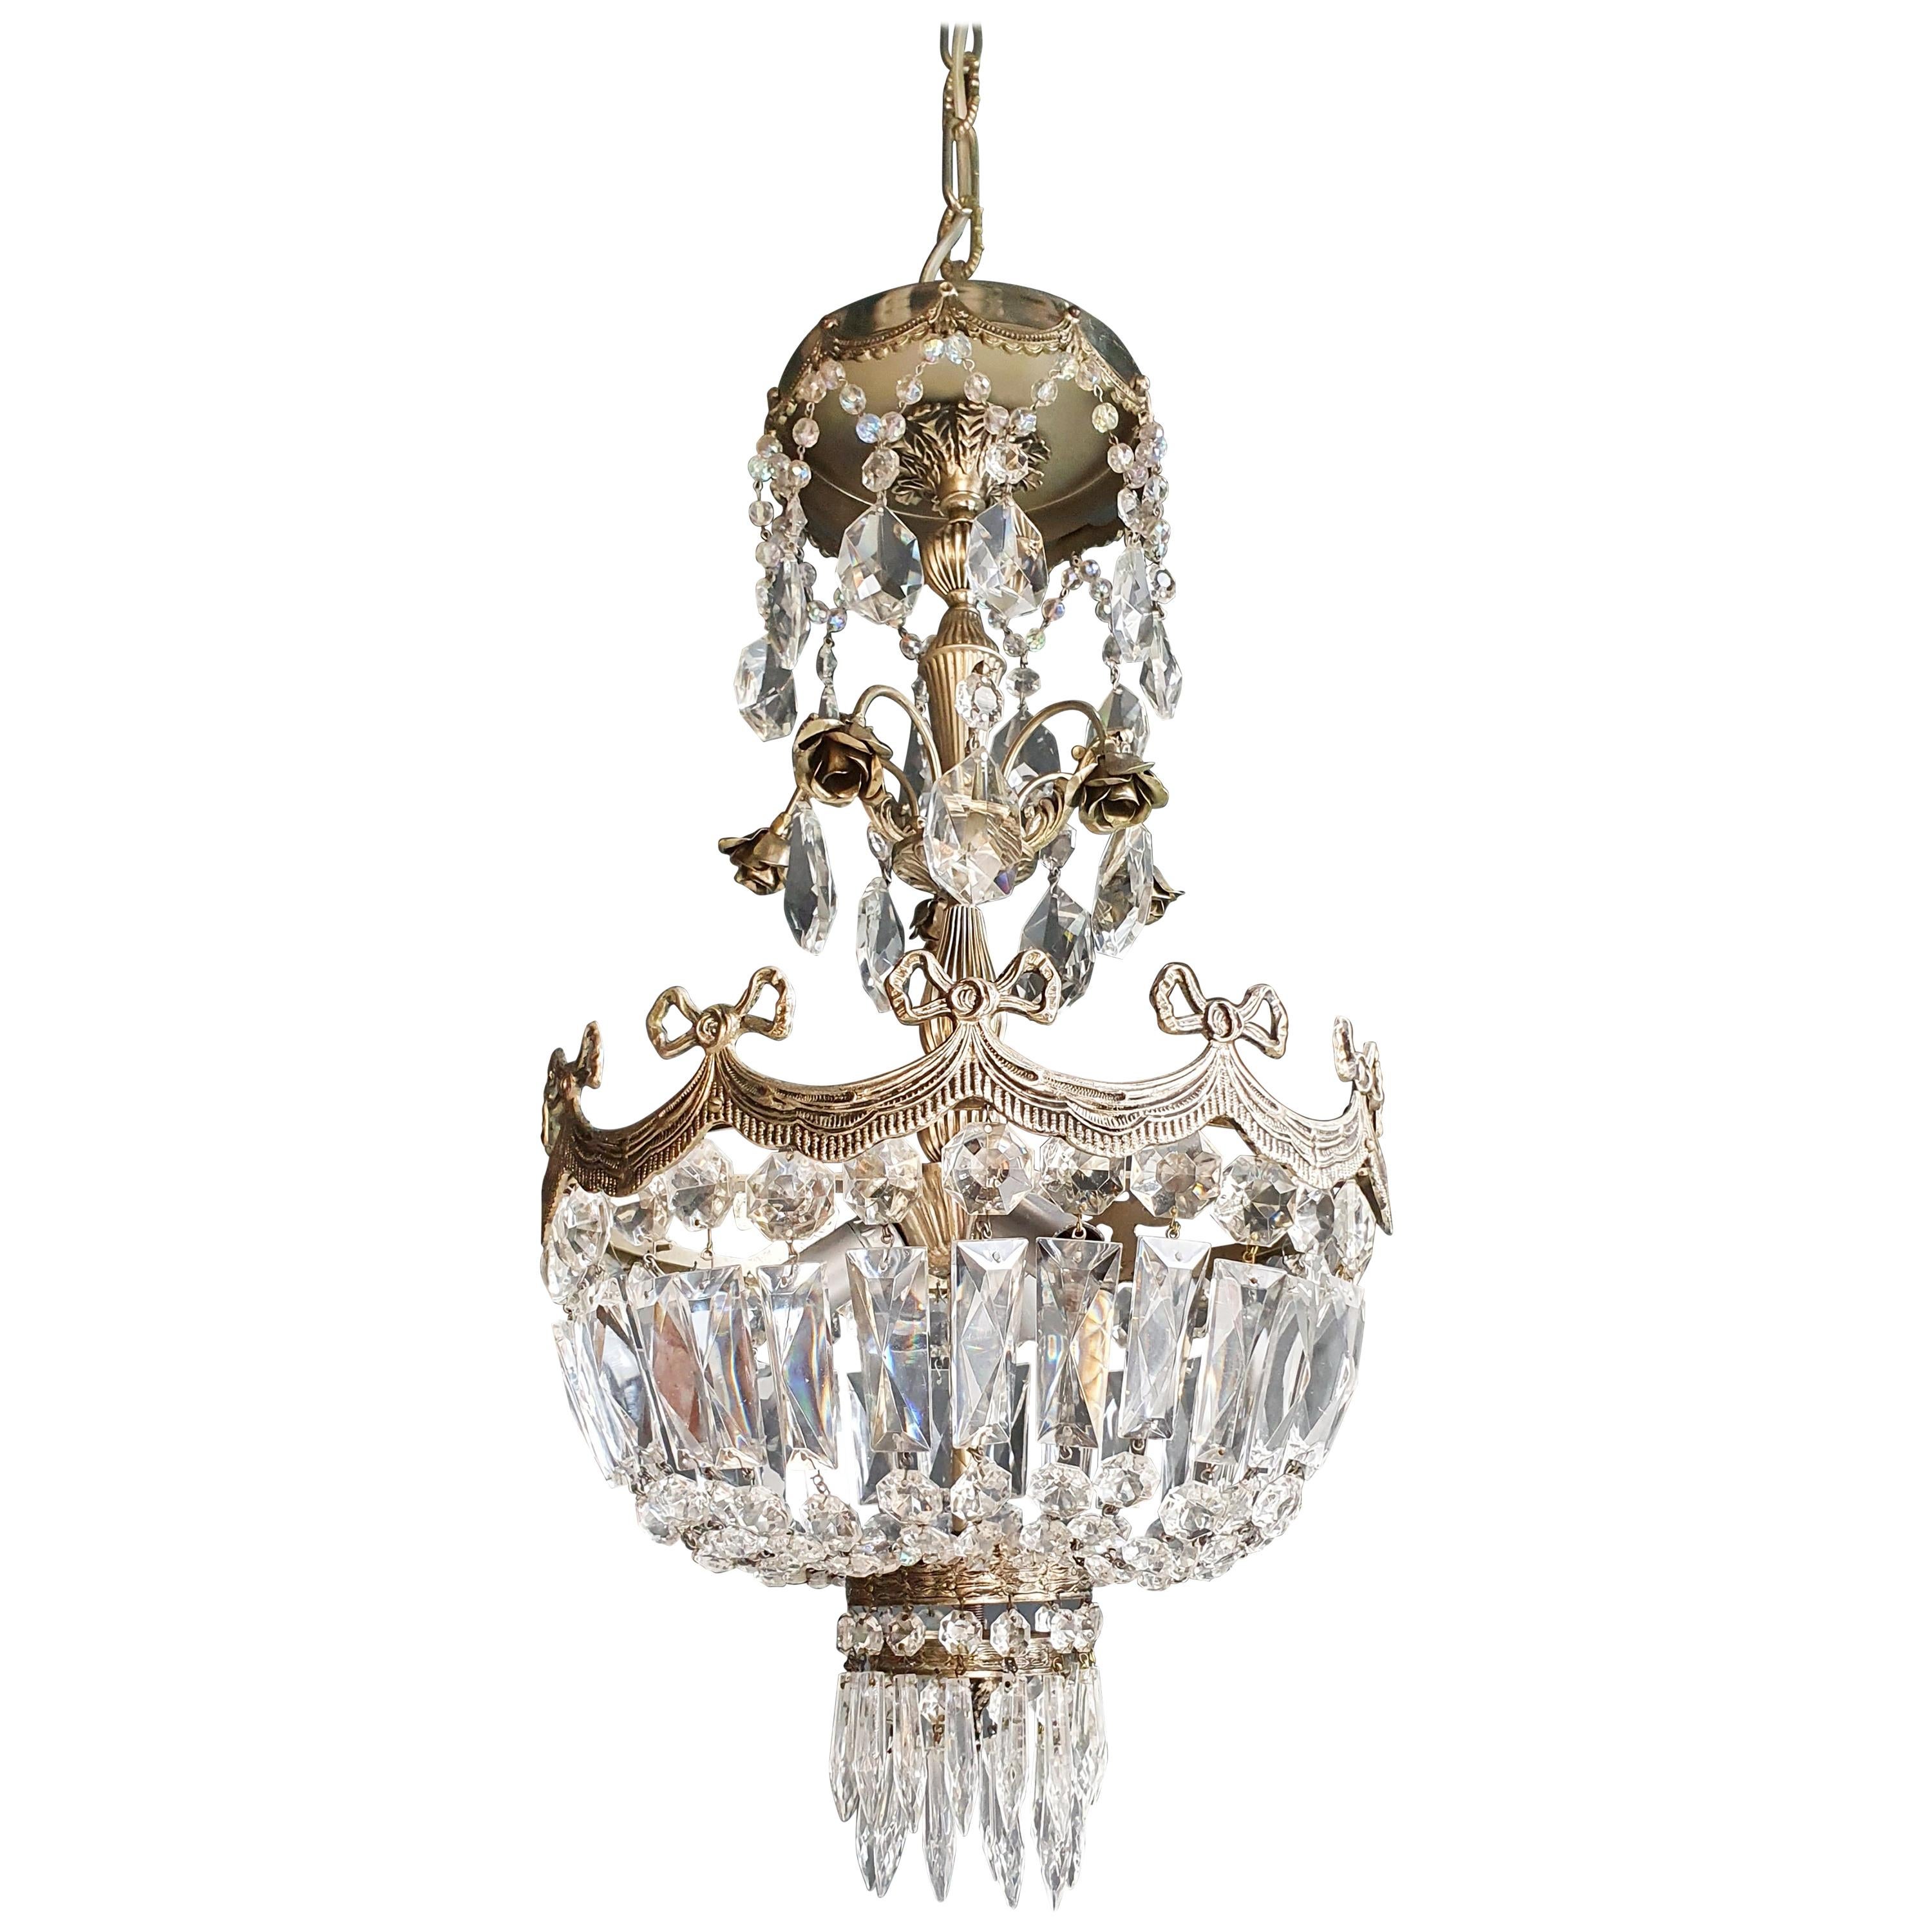 Silver Rose Brass Crystal Chandelier Antique Ceiling Lamp Lustre Art Nouveau